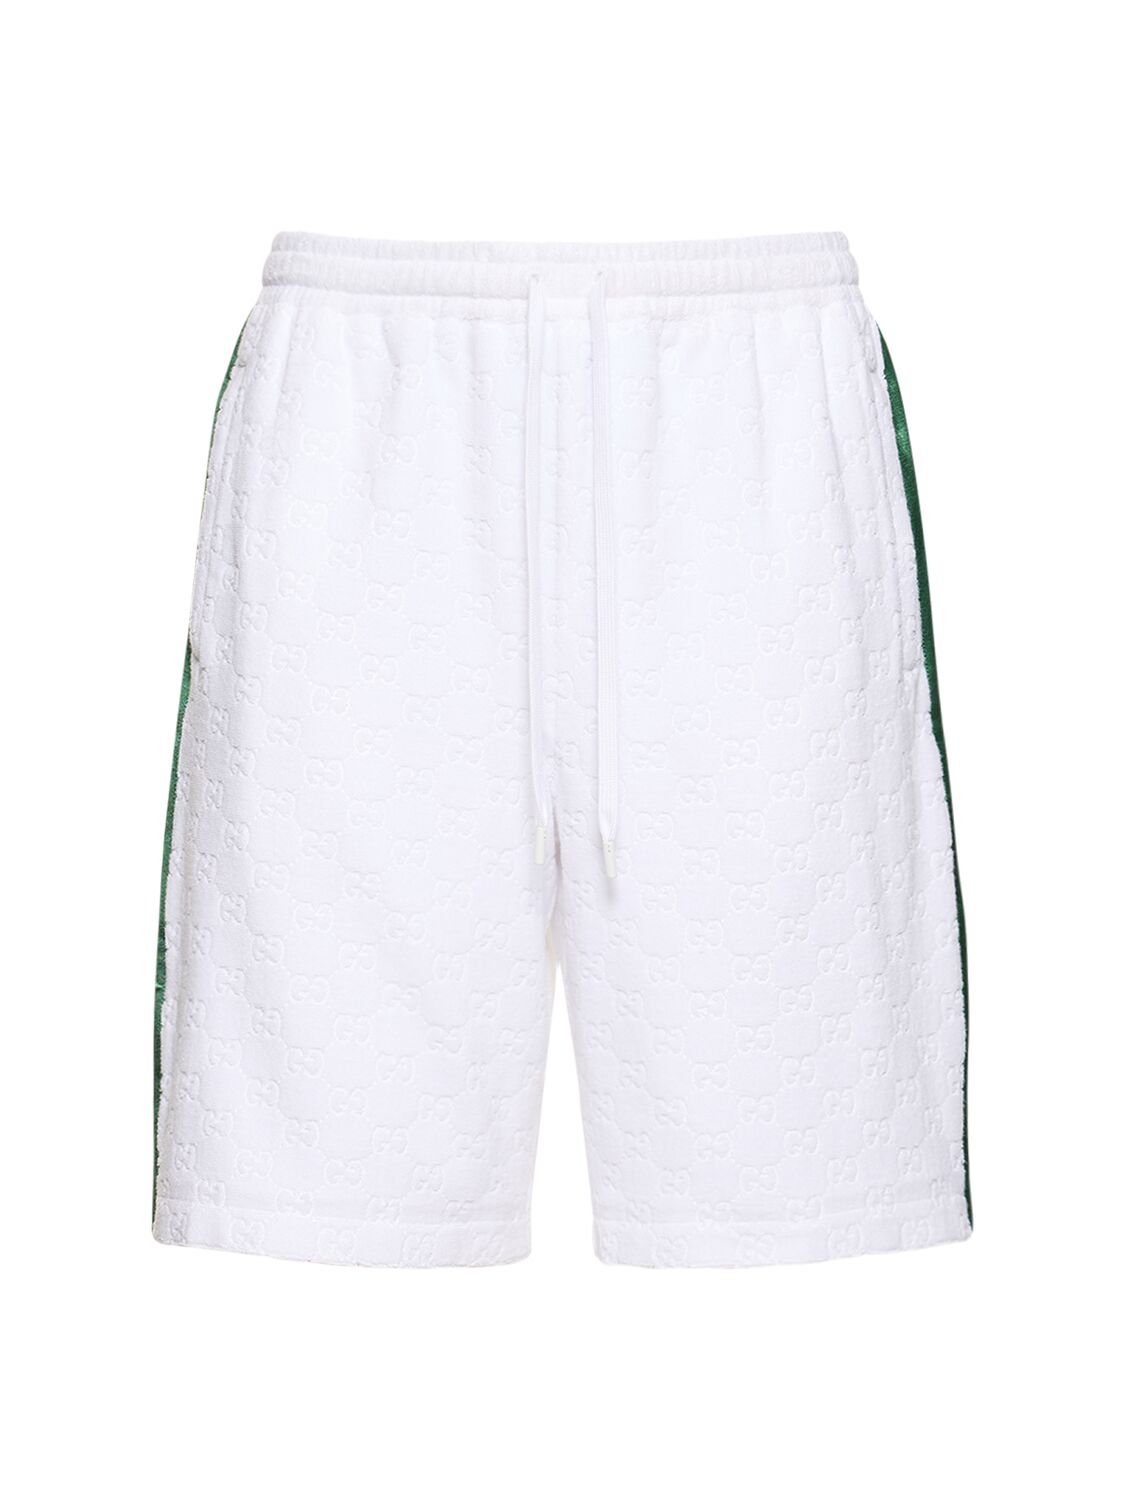 Gucci Gg Sponge Sweat Shorts W/ Web Detail In 白色,多色